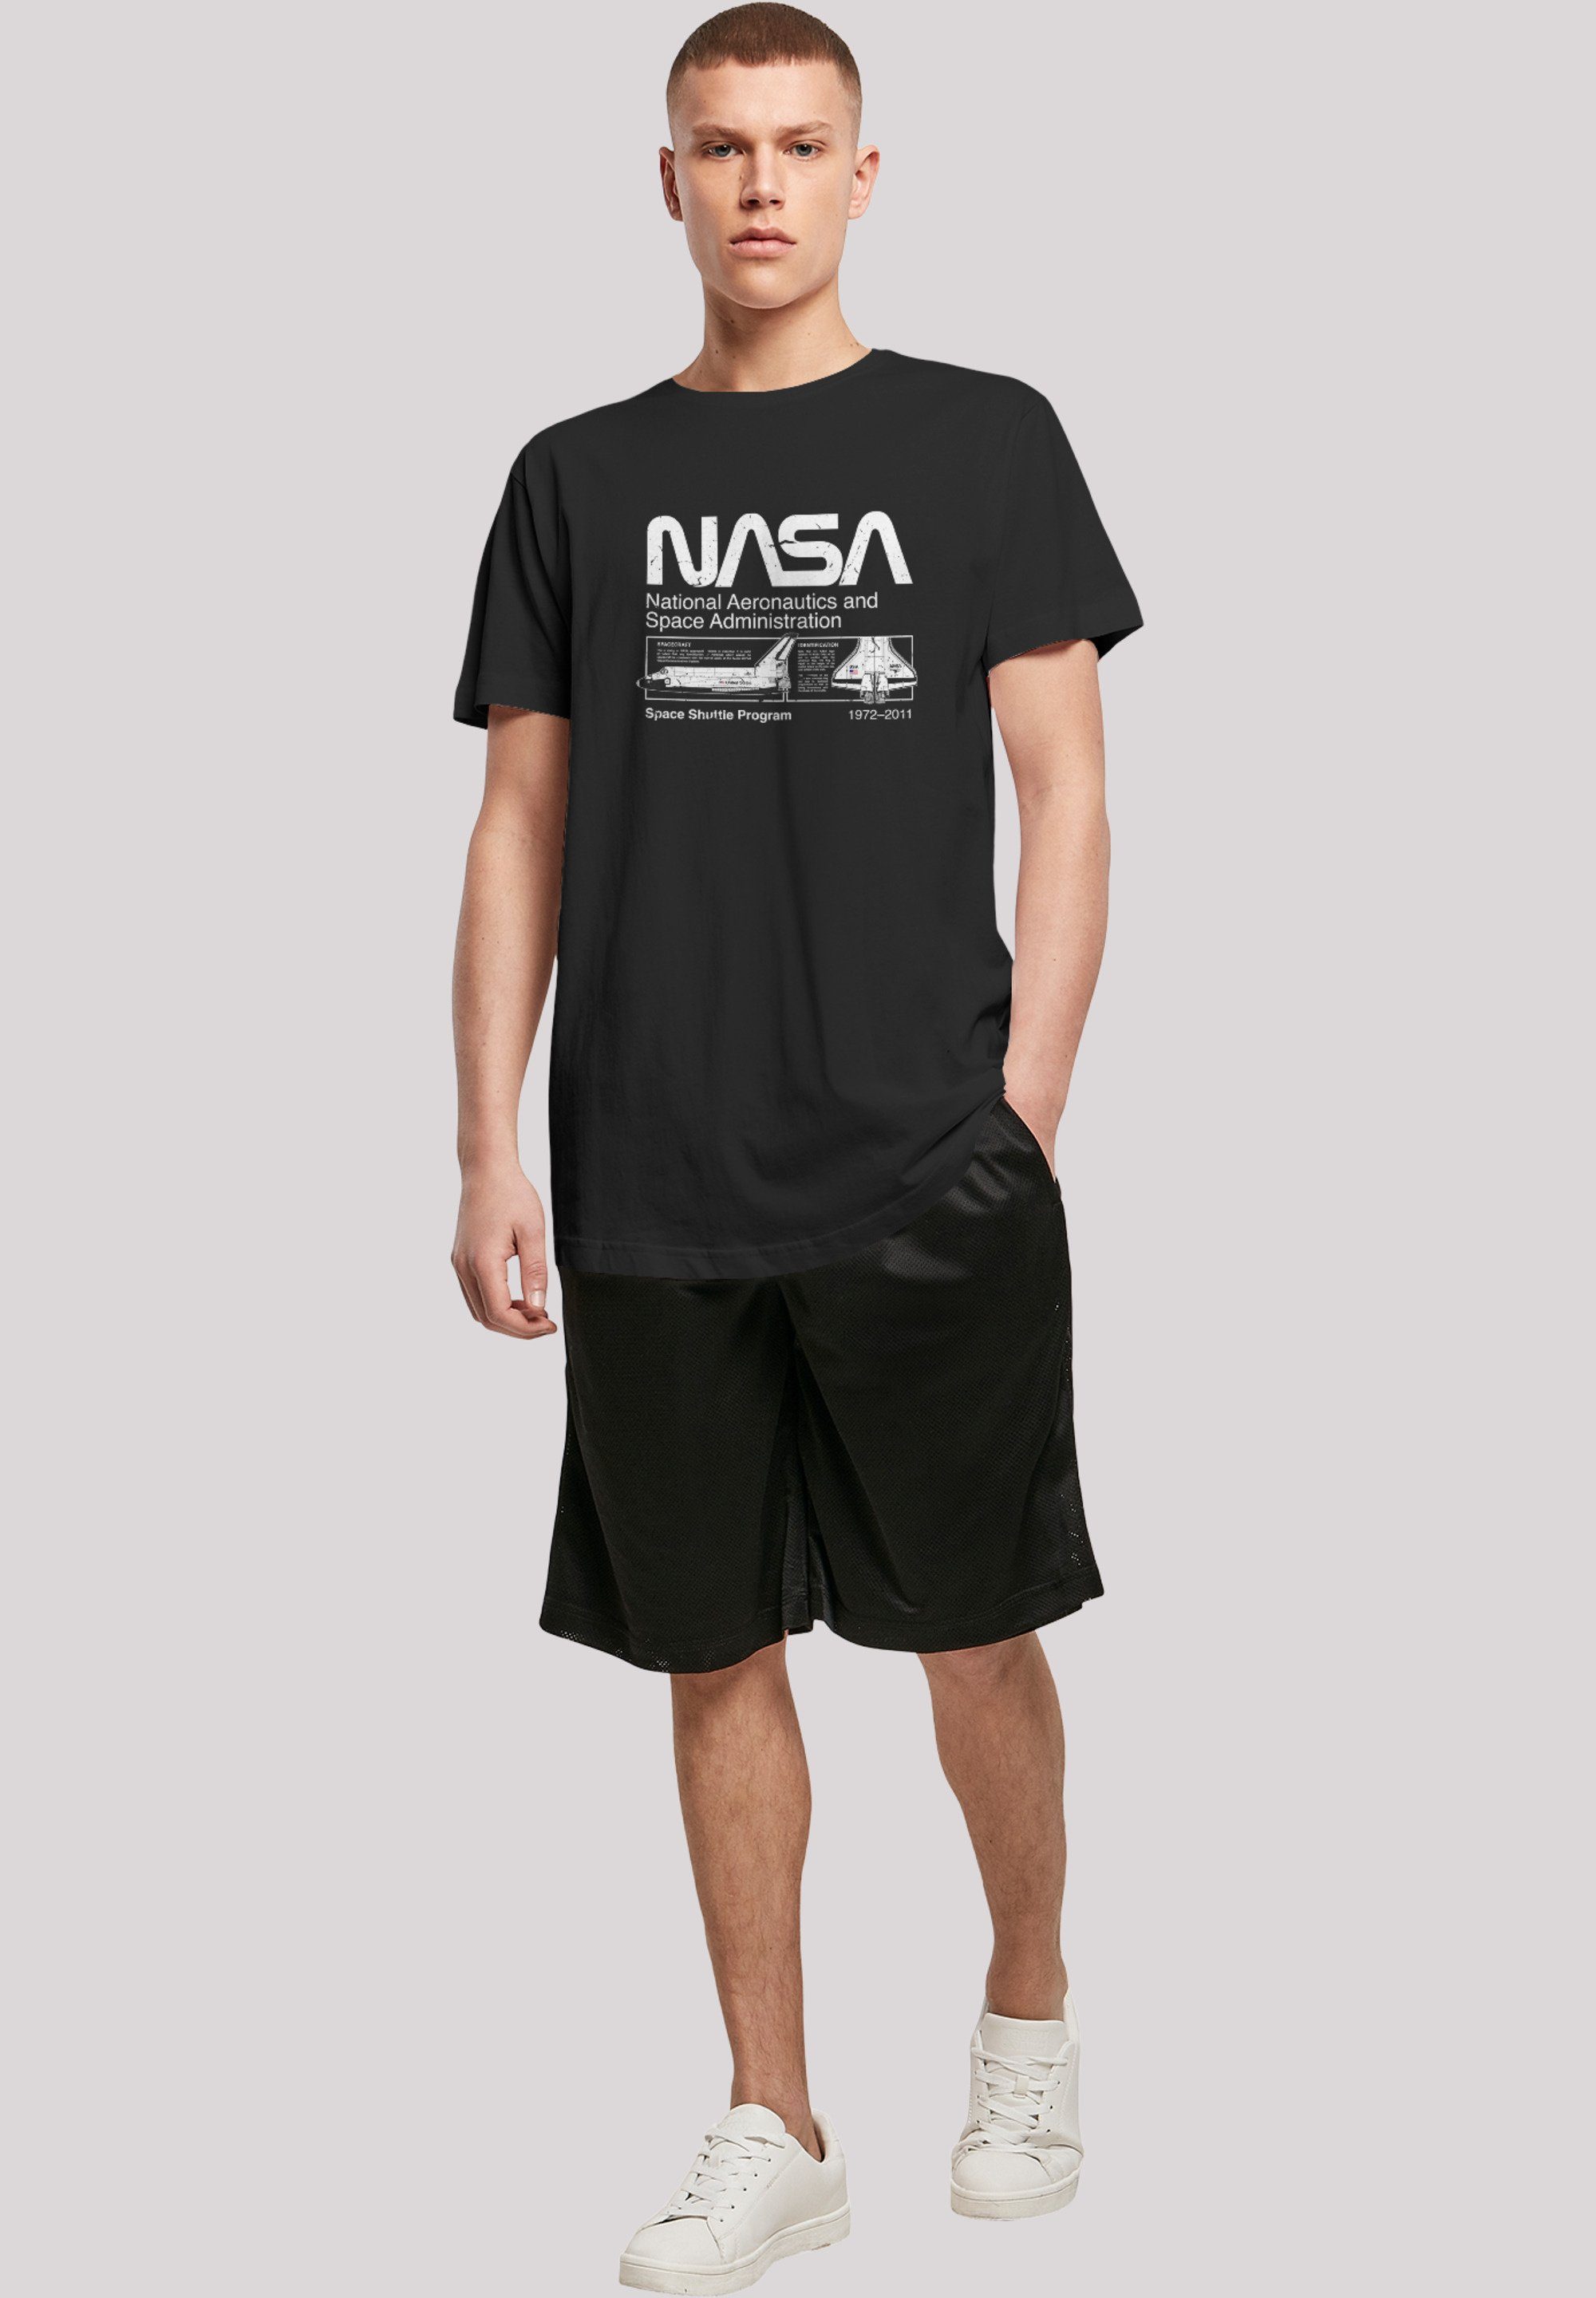 Merch,Lang,Longshirt,Bedruckt Classic T-Shirt Herren,Premium F4NT4STIC NASA Shuttle Black Space